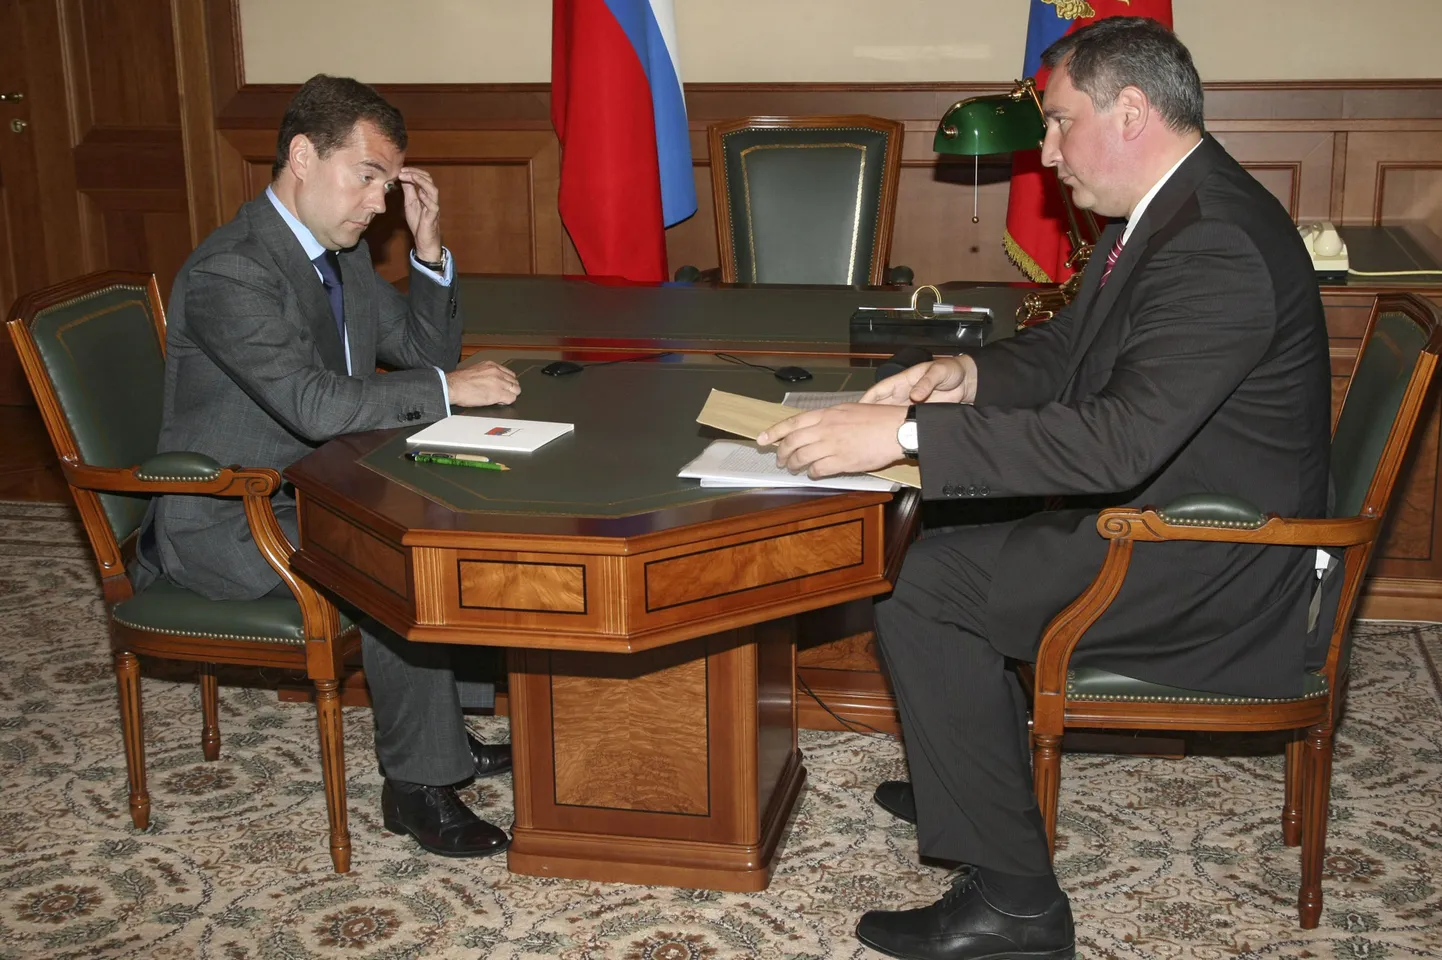 Venemaa president Dmitri Medvedev (vasakul) ja Venemaa esindaja NATOs Dmitri Rogozin (paremal).